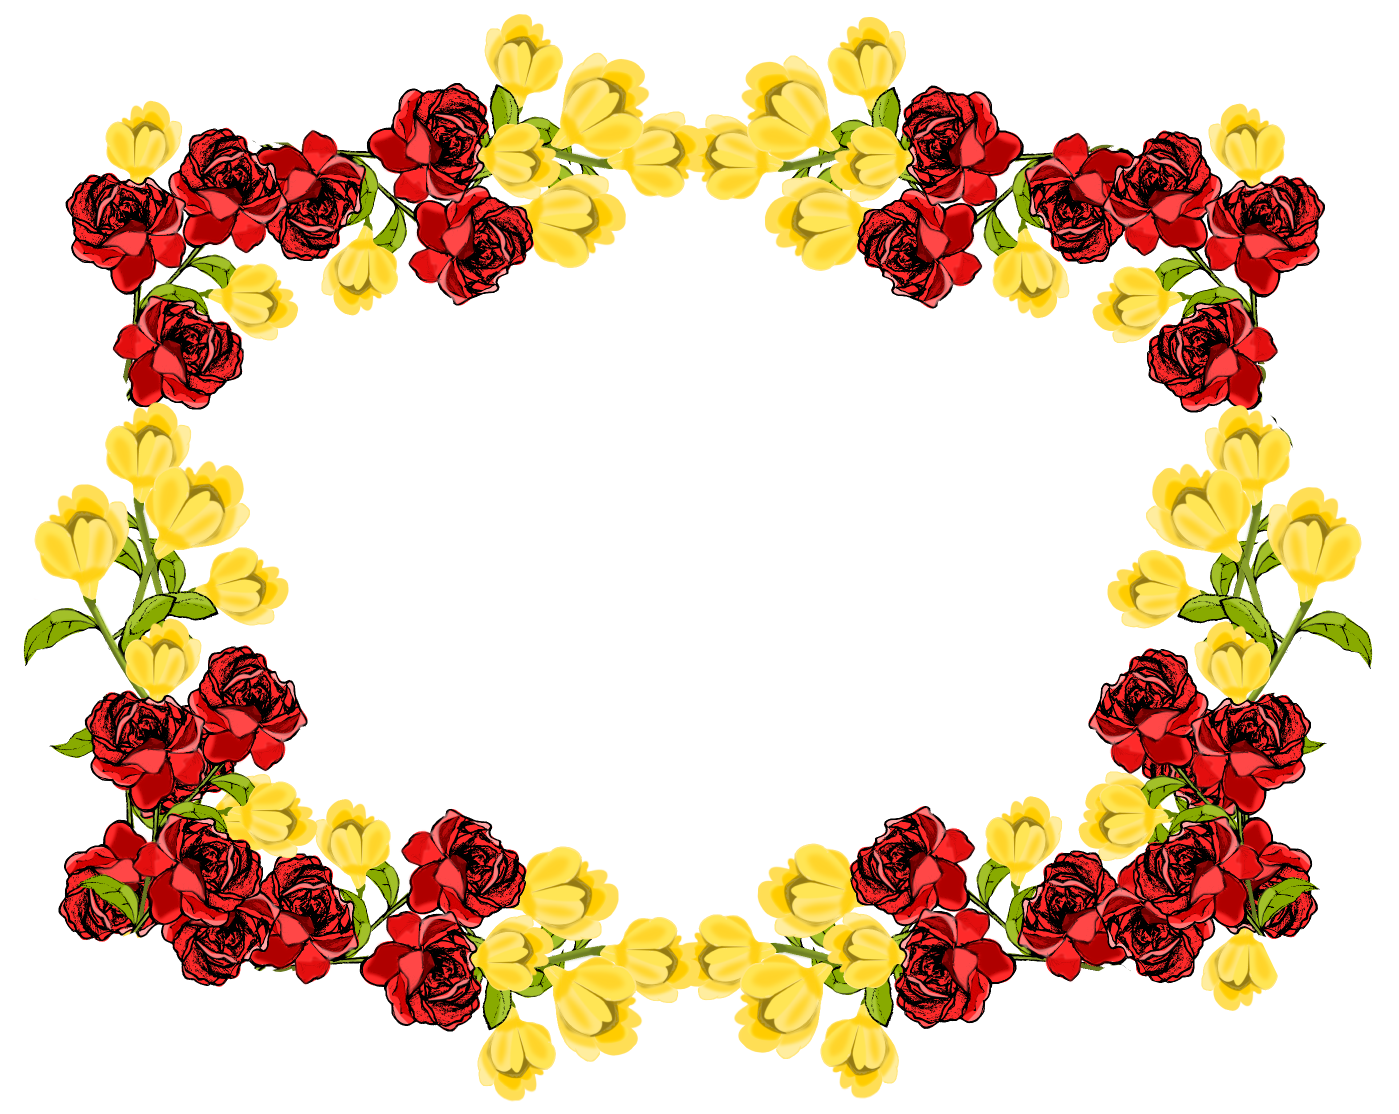 Batas bunga kuning PNG Gambar berkualitas tinggi